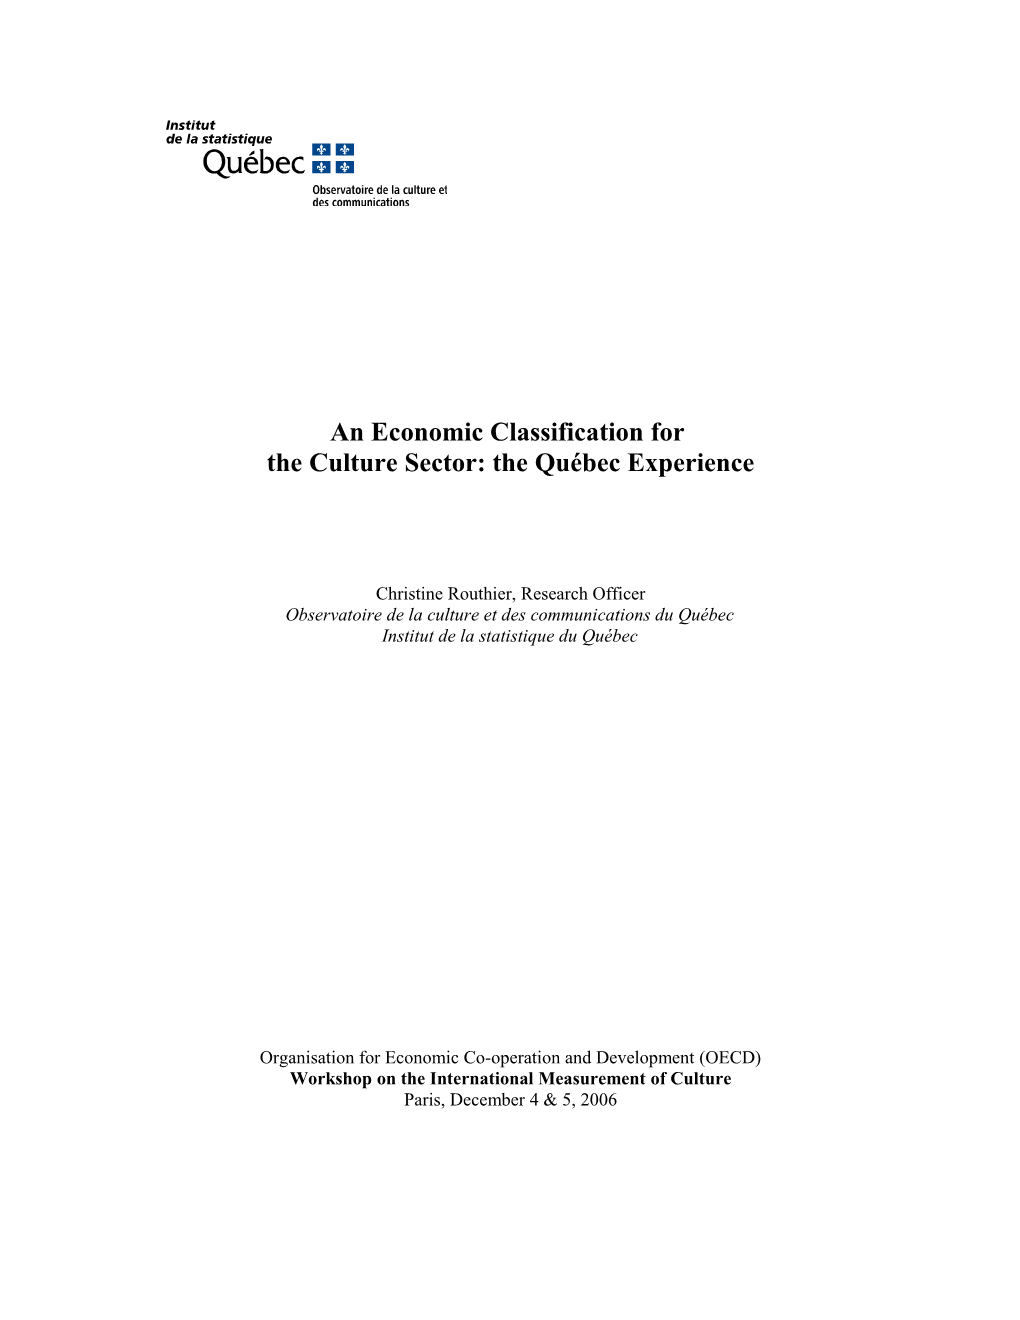 Une Classification Économique Propre Au Secteur De La Culture : L Expérience Du Québec